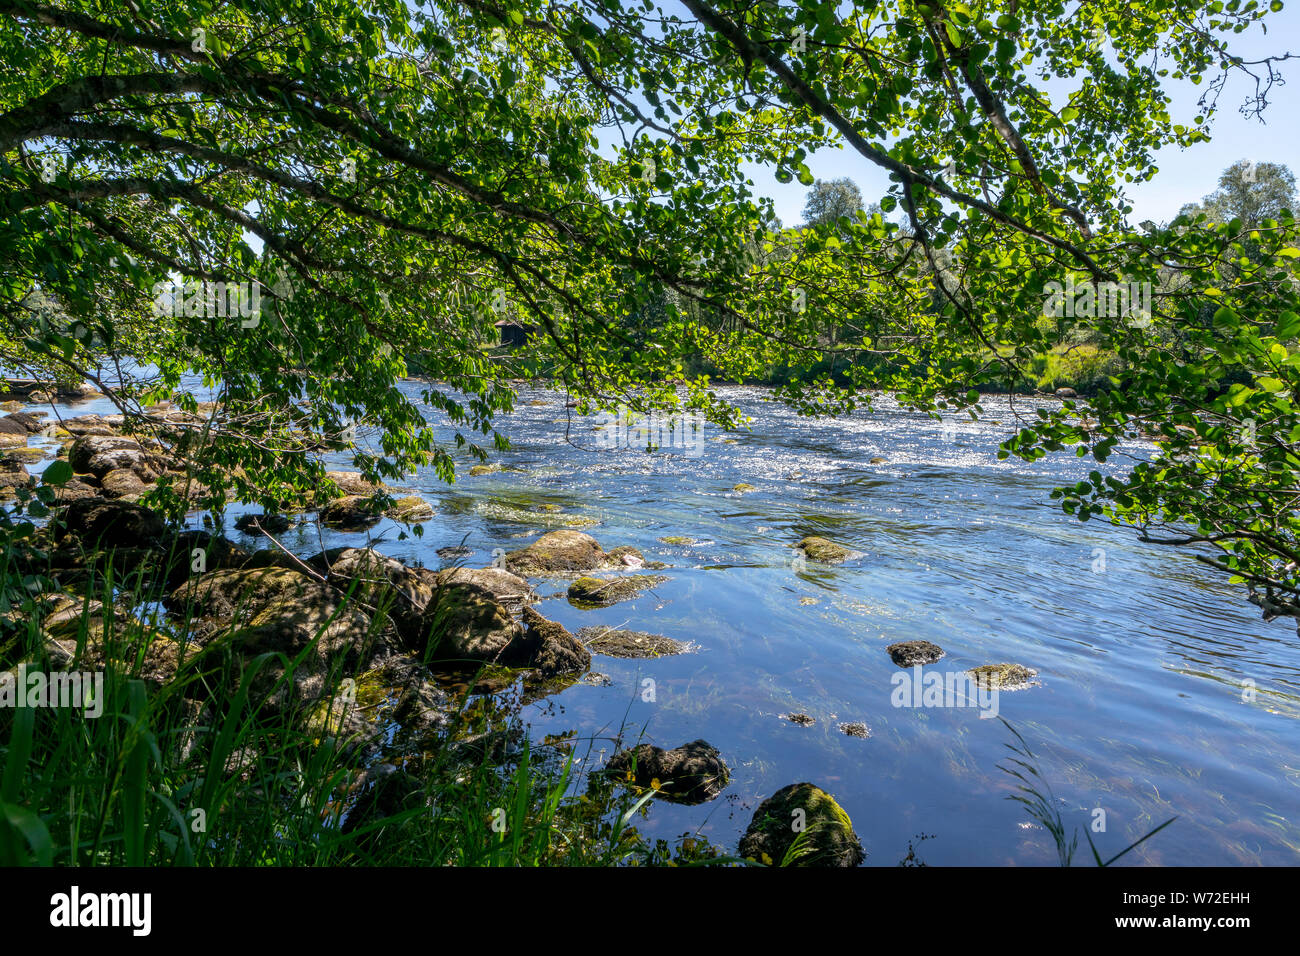 Am Ufer des Flusses Spey in Schottland mit einem Baum hängen im Wasser Stockfoto